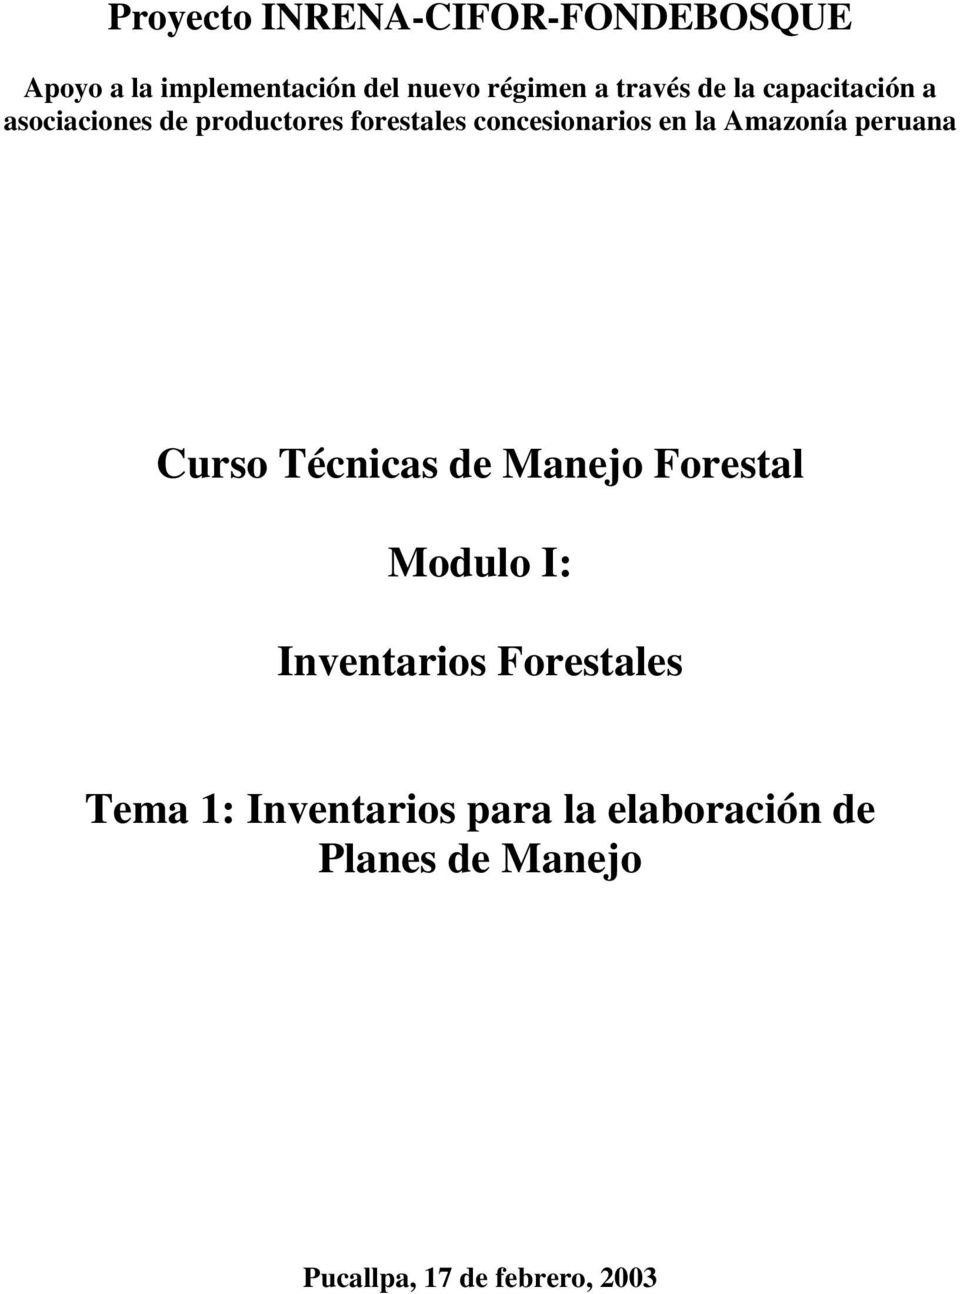 la Amazonía peruana Curso Técnicas de Manejo Forestal Modulo I: Inventarios